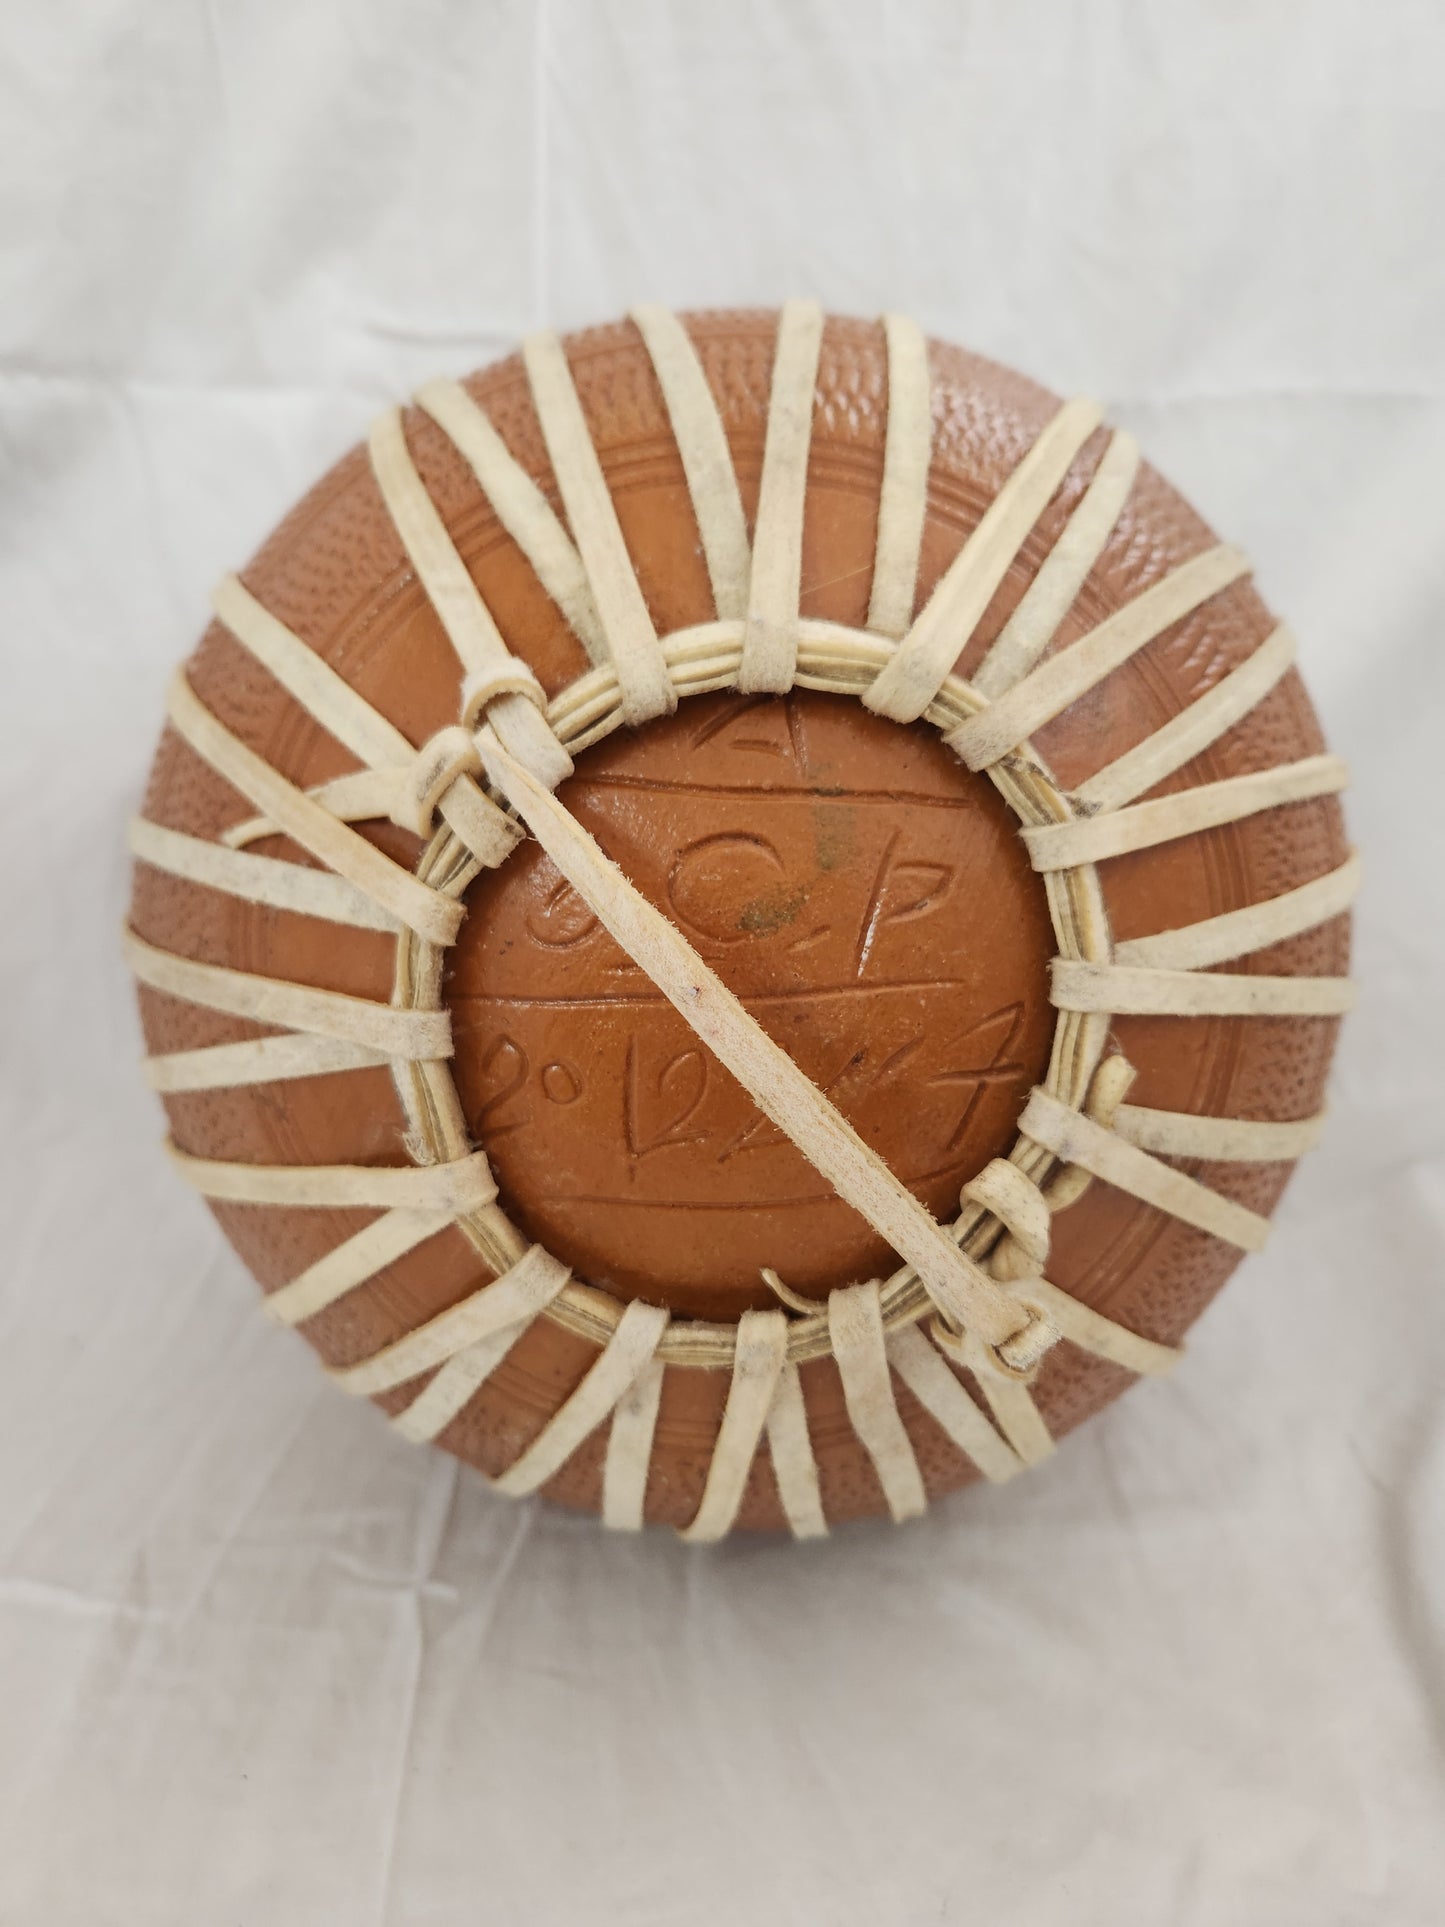 Handmade 9" Ceramic Baul Drum